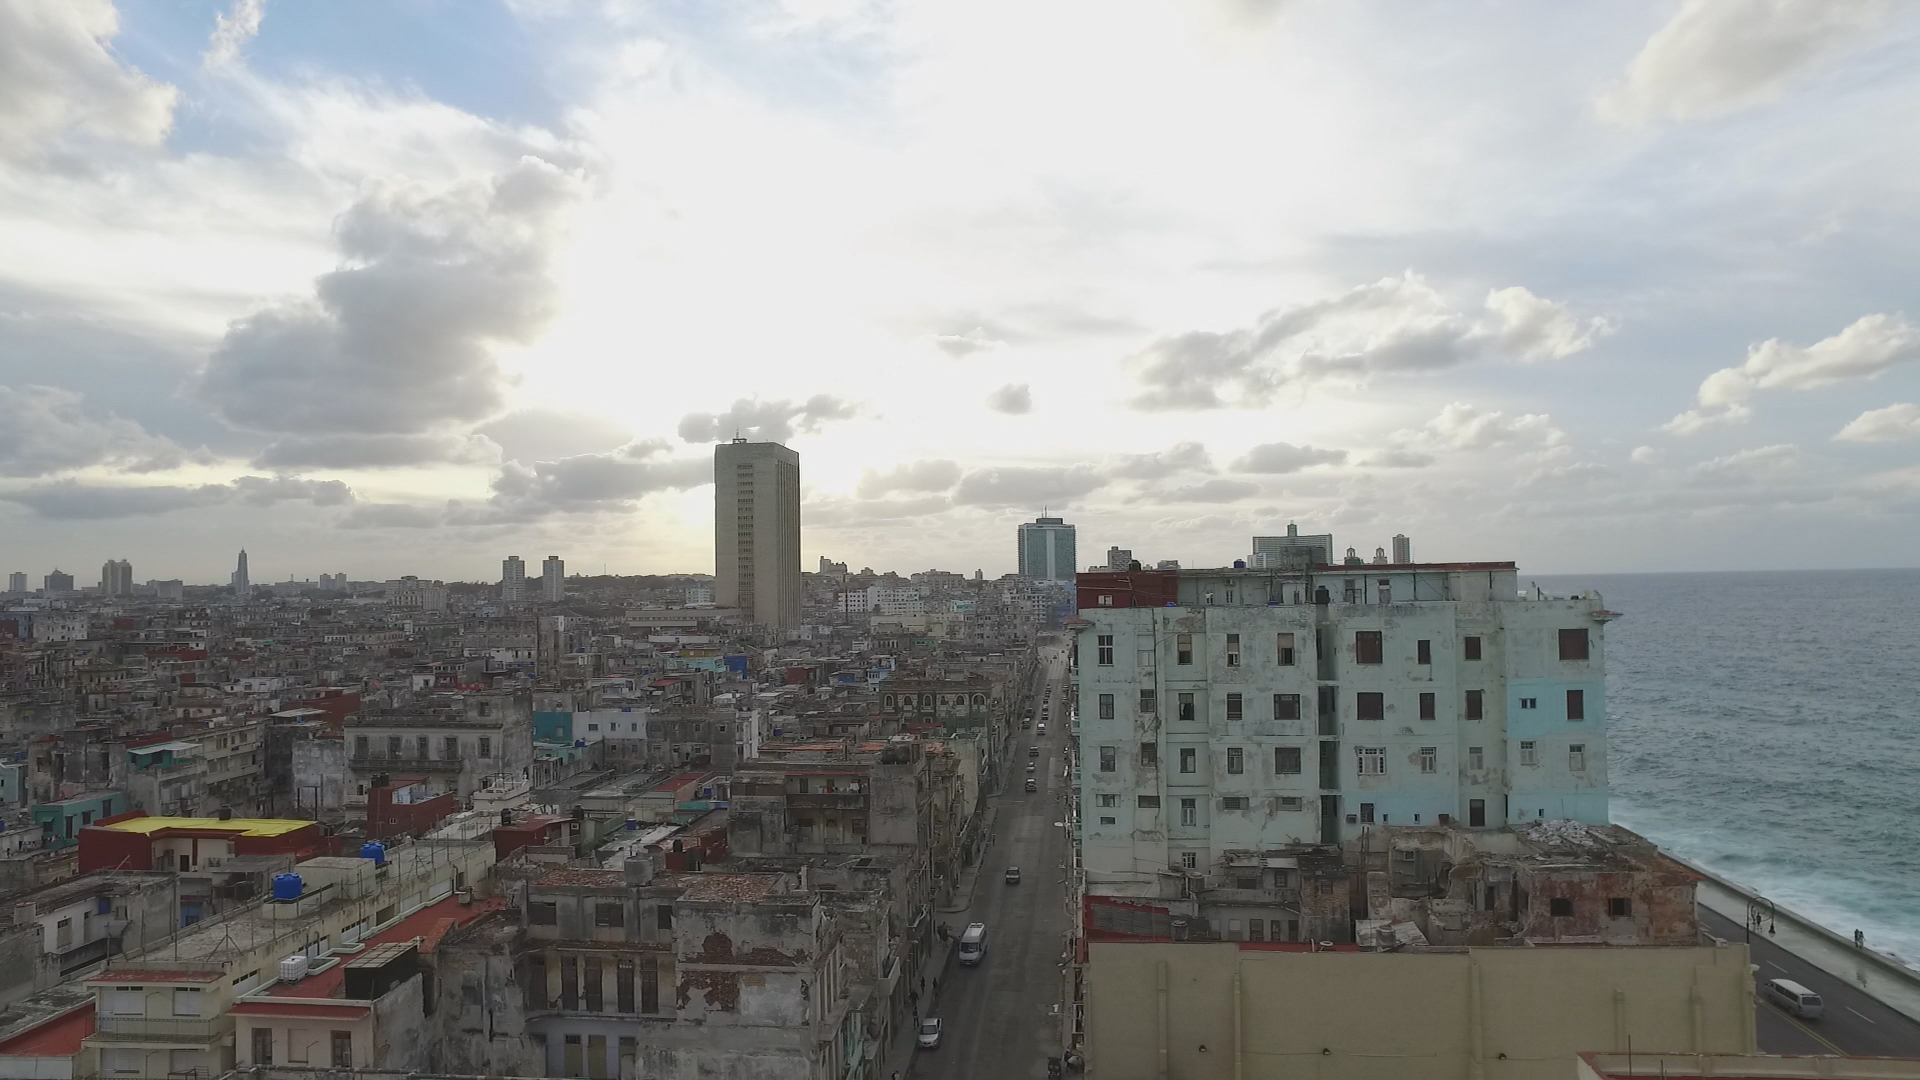  CUBA- This image depicts the peacefulness of the sky and ocean contrasted with the busy city of La Habana, Cuba.

Esta imagen representa la tranquilidad del cielo y el océano en contraste con el ajetreo de la ciudad de La Habana, Cuba.
(Photo Credit